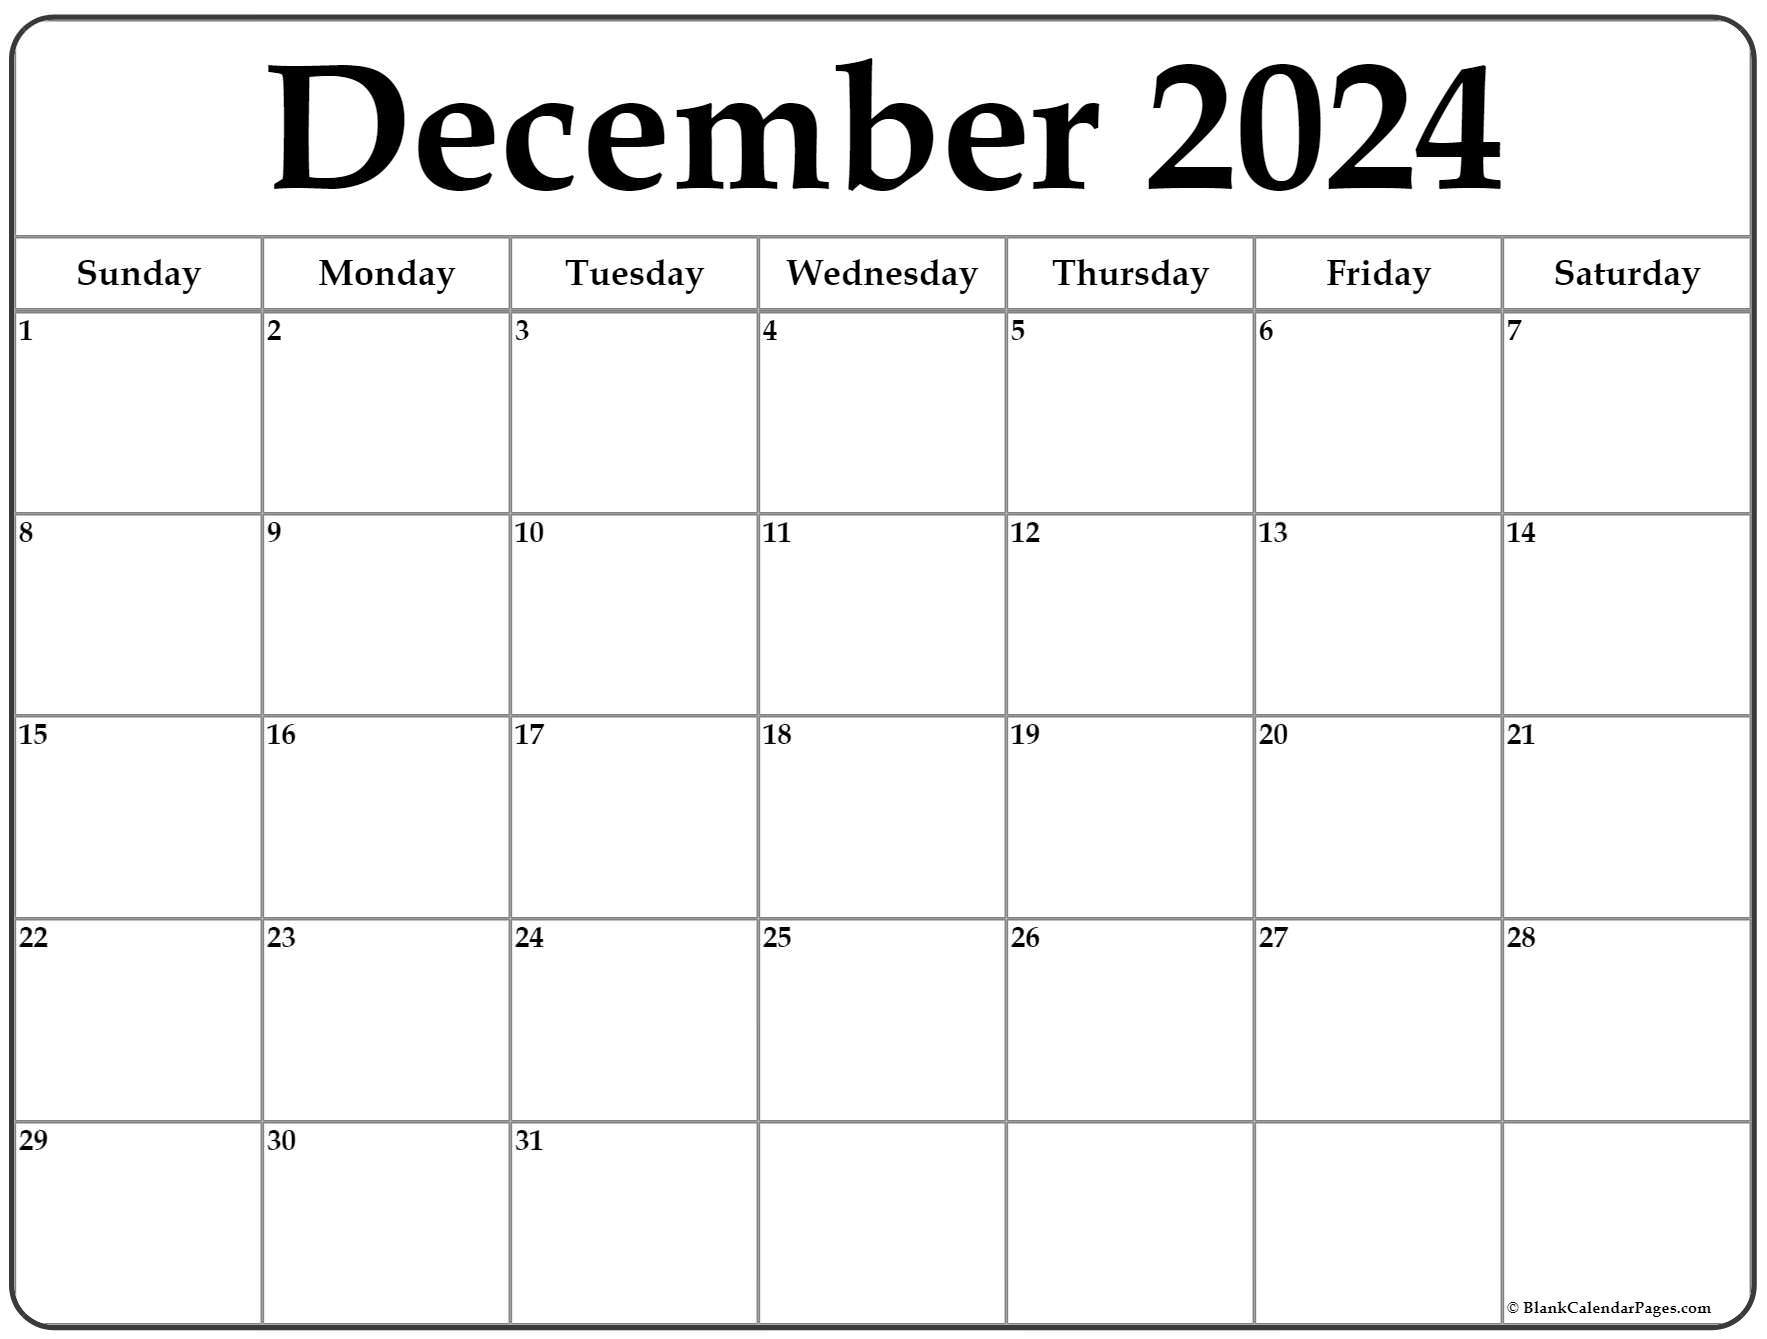 Free Calendar December 2024 Leia Shauna